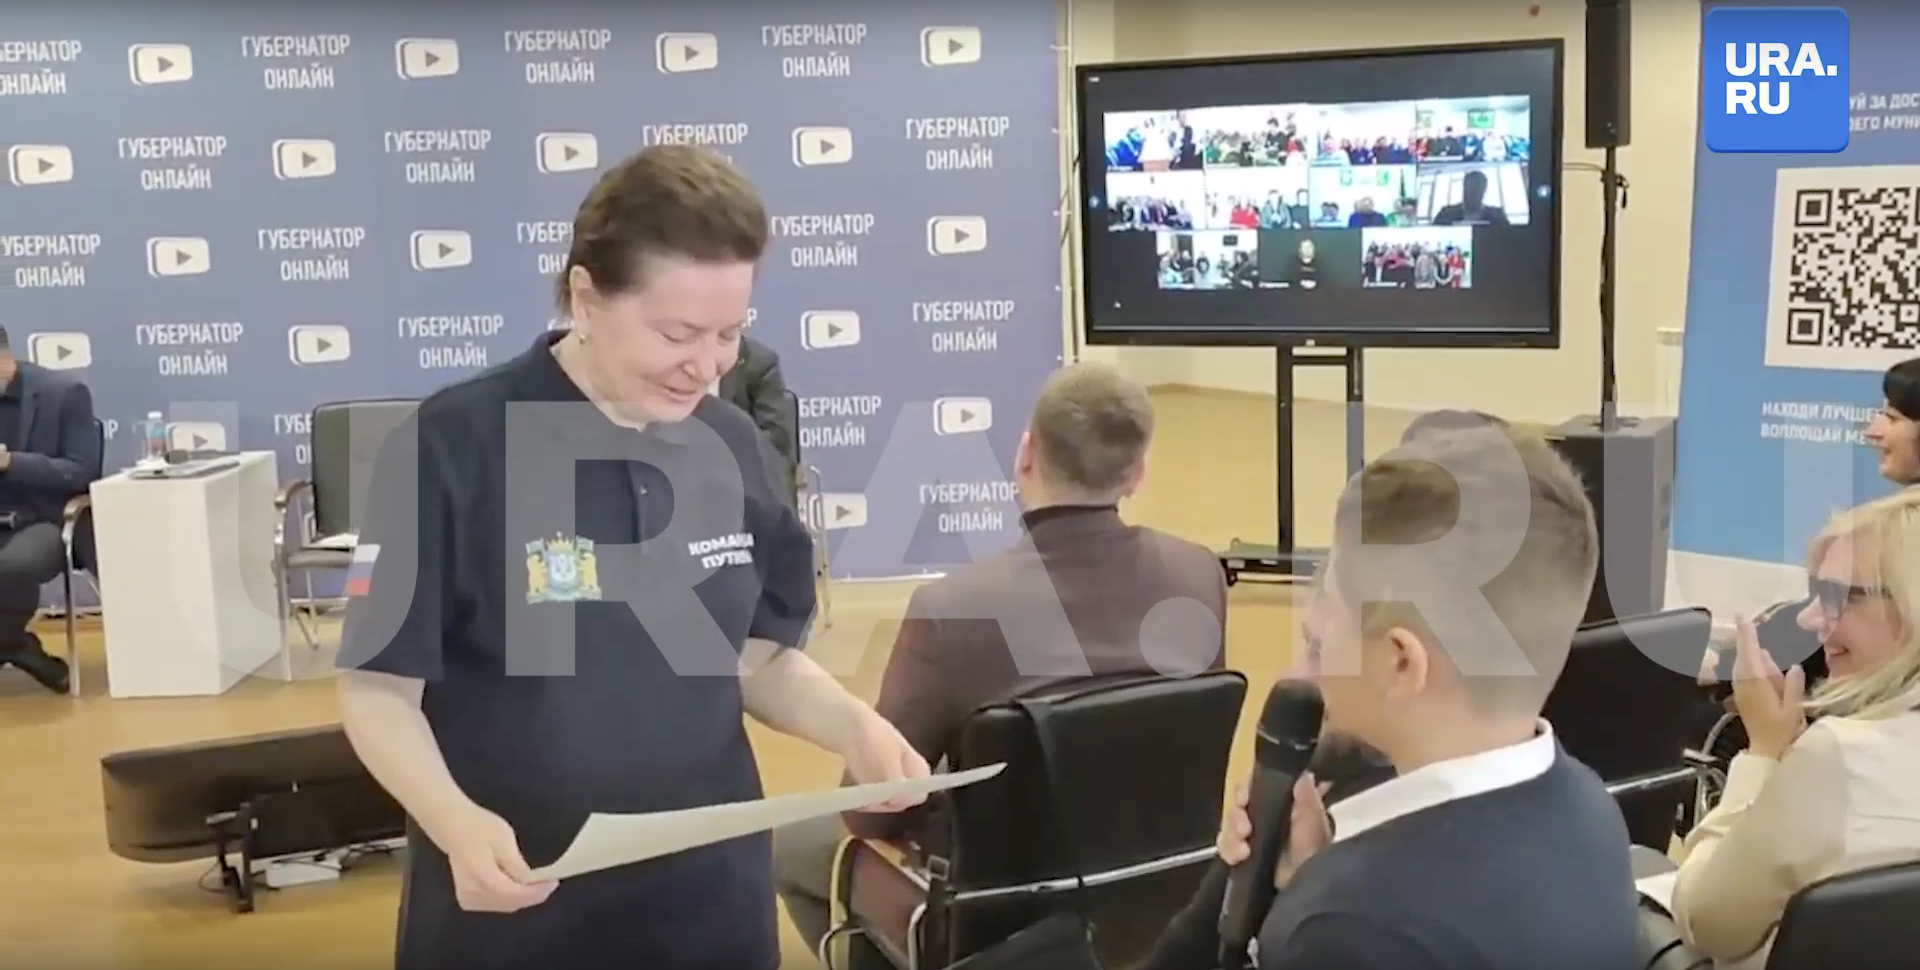 Ханты, чум и нефтевышки: Школьник попросил главу ХМАО передать его рисунок Путину на день рождения